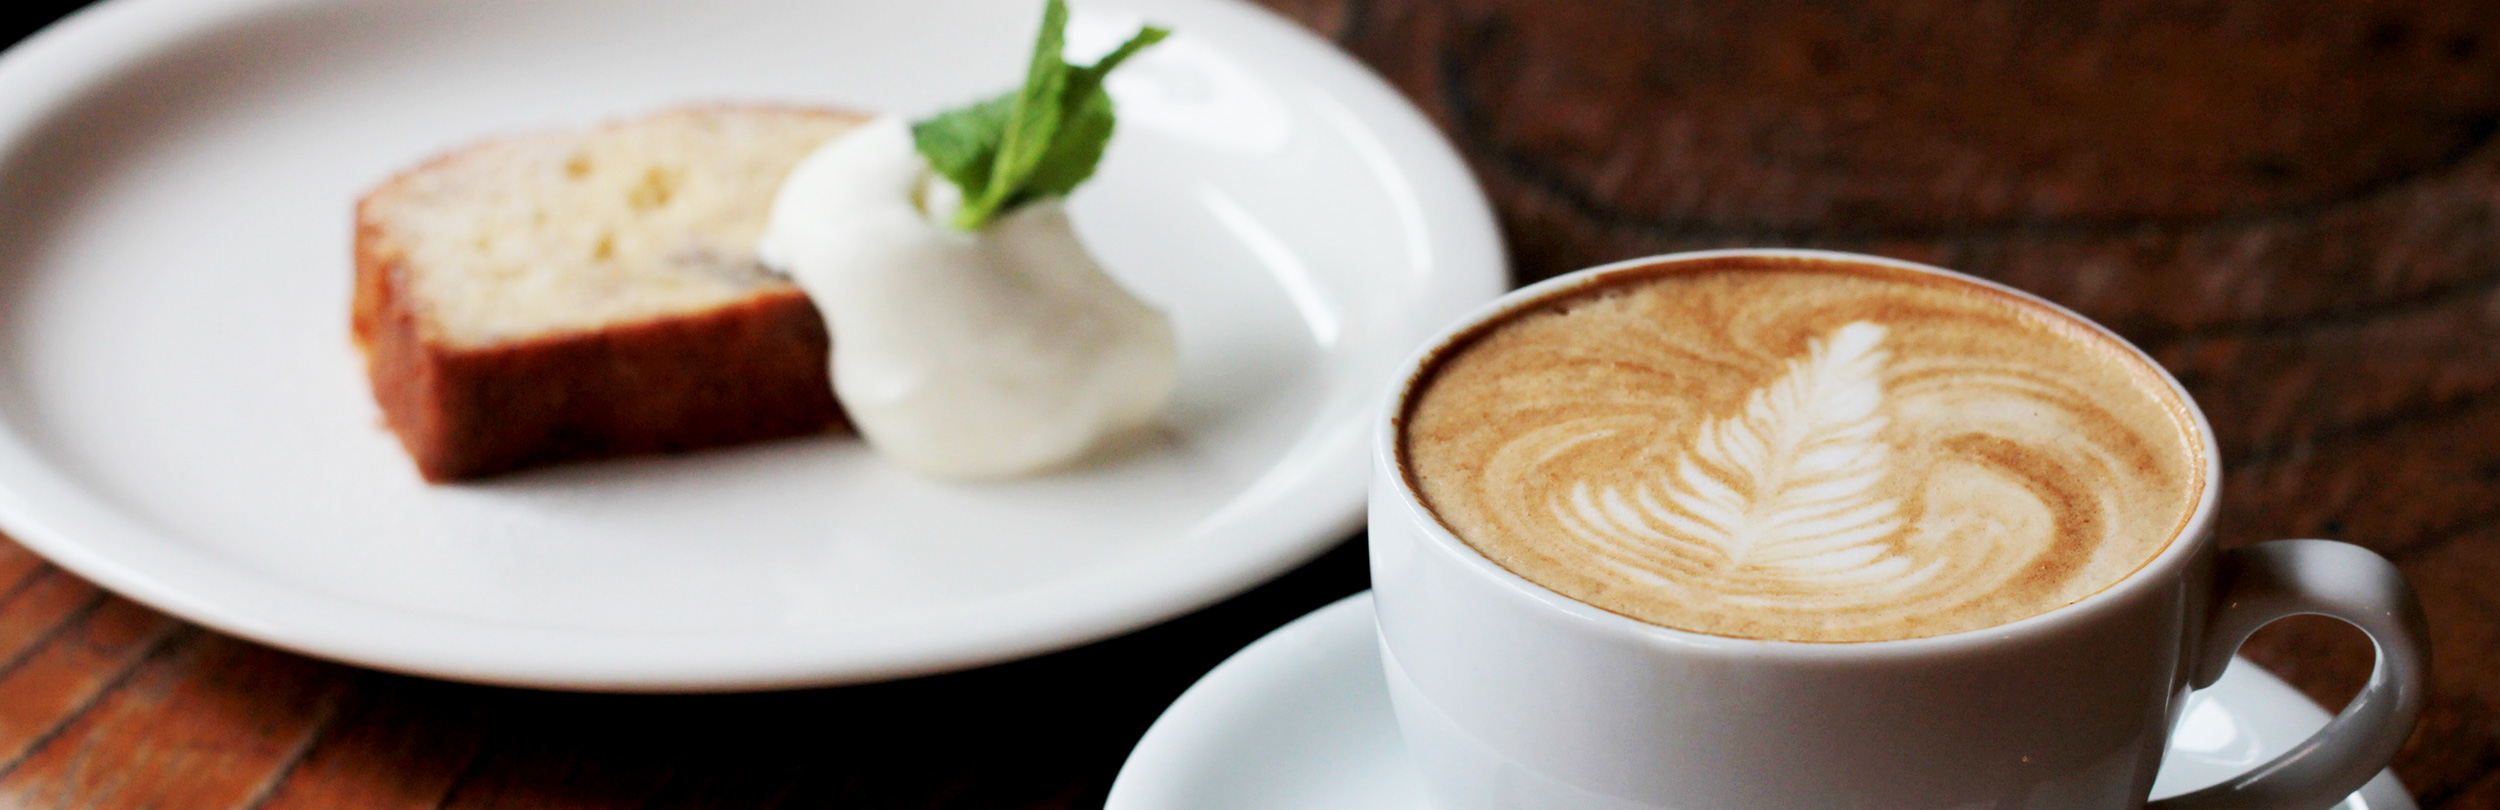 地域に根付くカフェ オープンテラスでもコーヒーが楽しめます cafe ruuDho